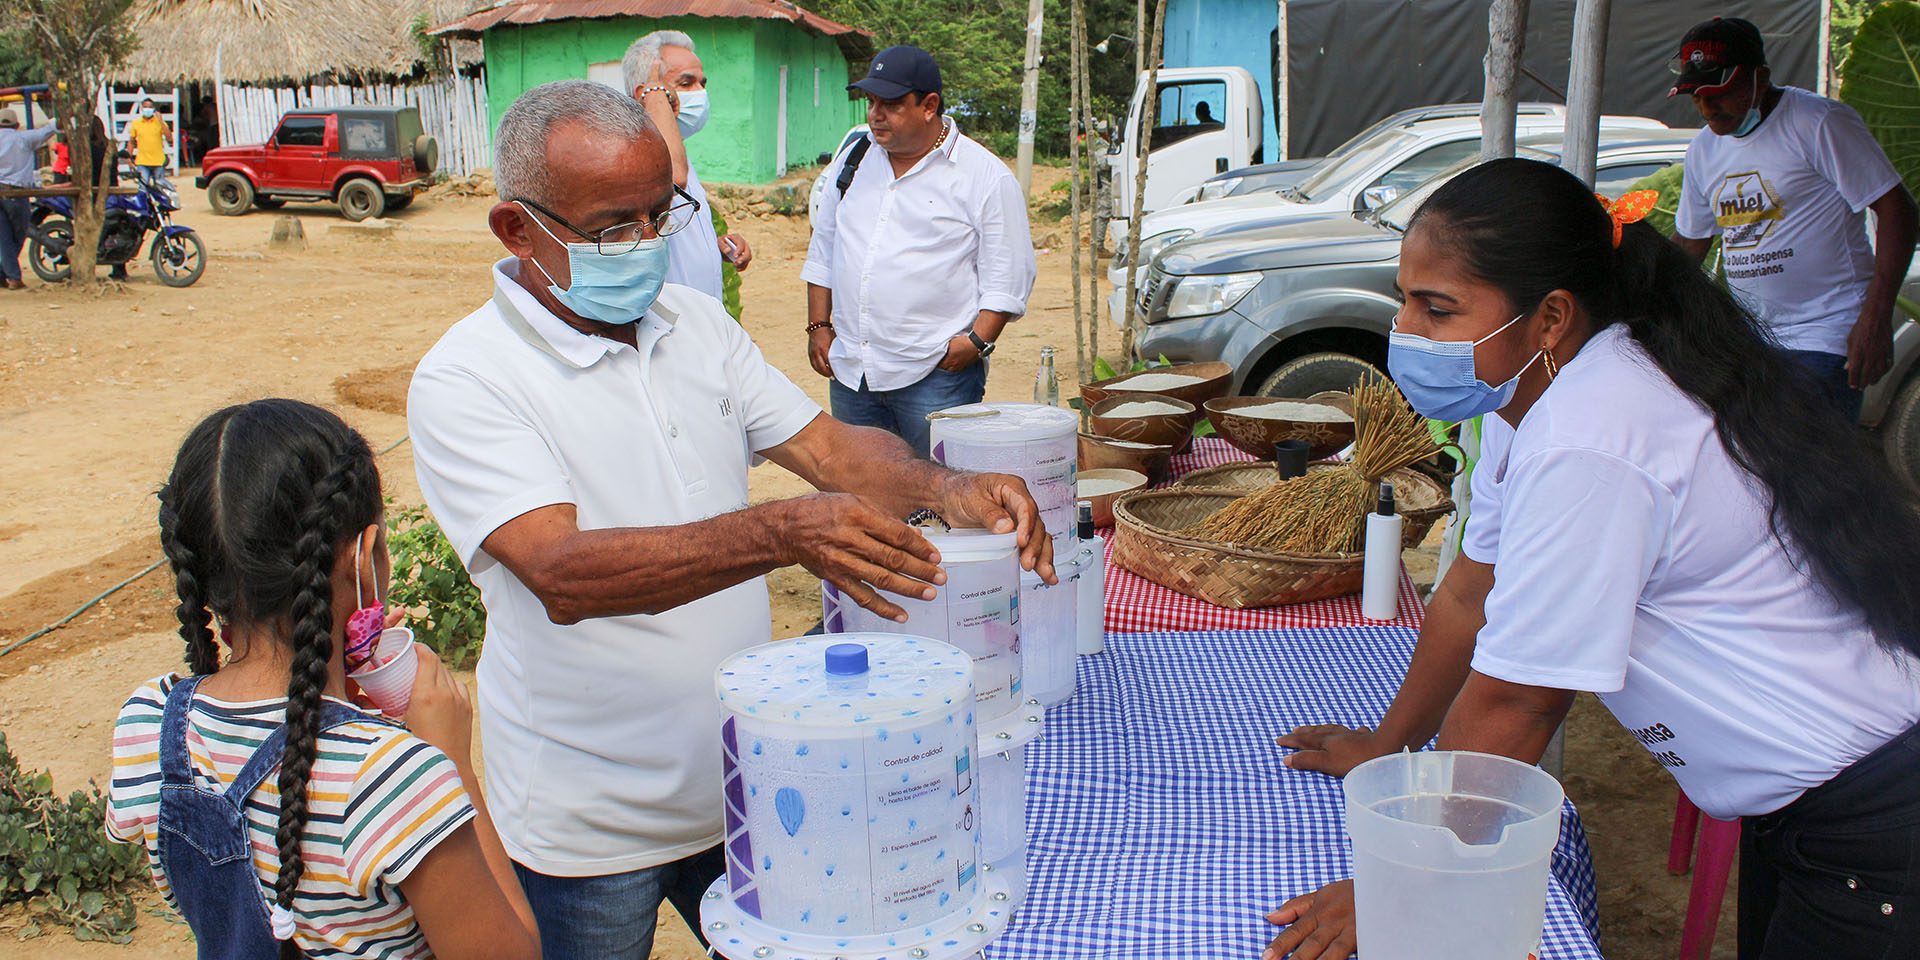 In Kolumbien und Ecuador wurden bereits zwei Pilotprojekte durchgeführt: Eine Wasserunternehmerin erklärt Interessierten, wie der Wasserfilter von Openversum funktioniert.